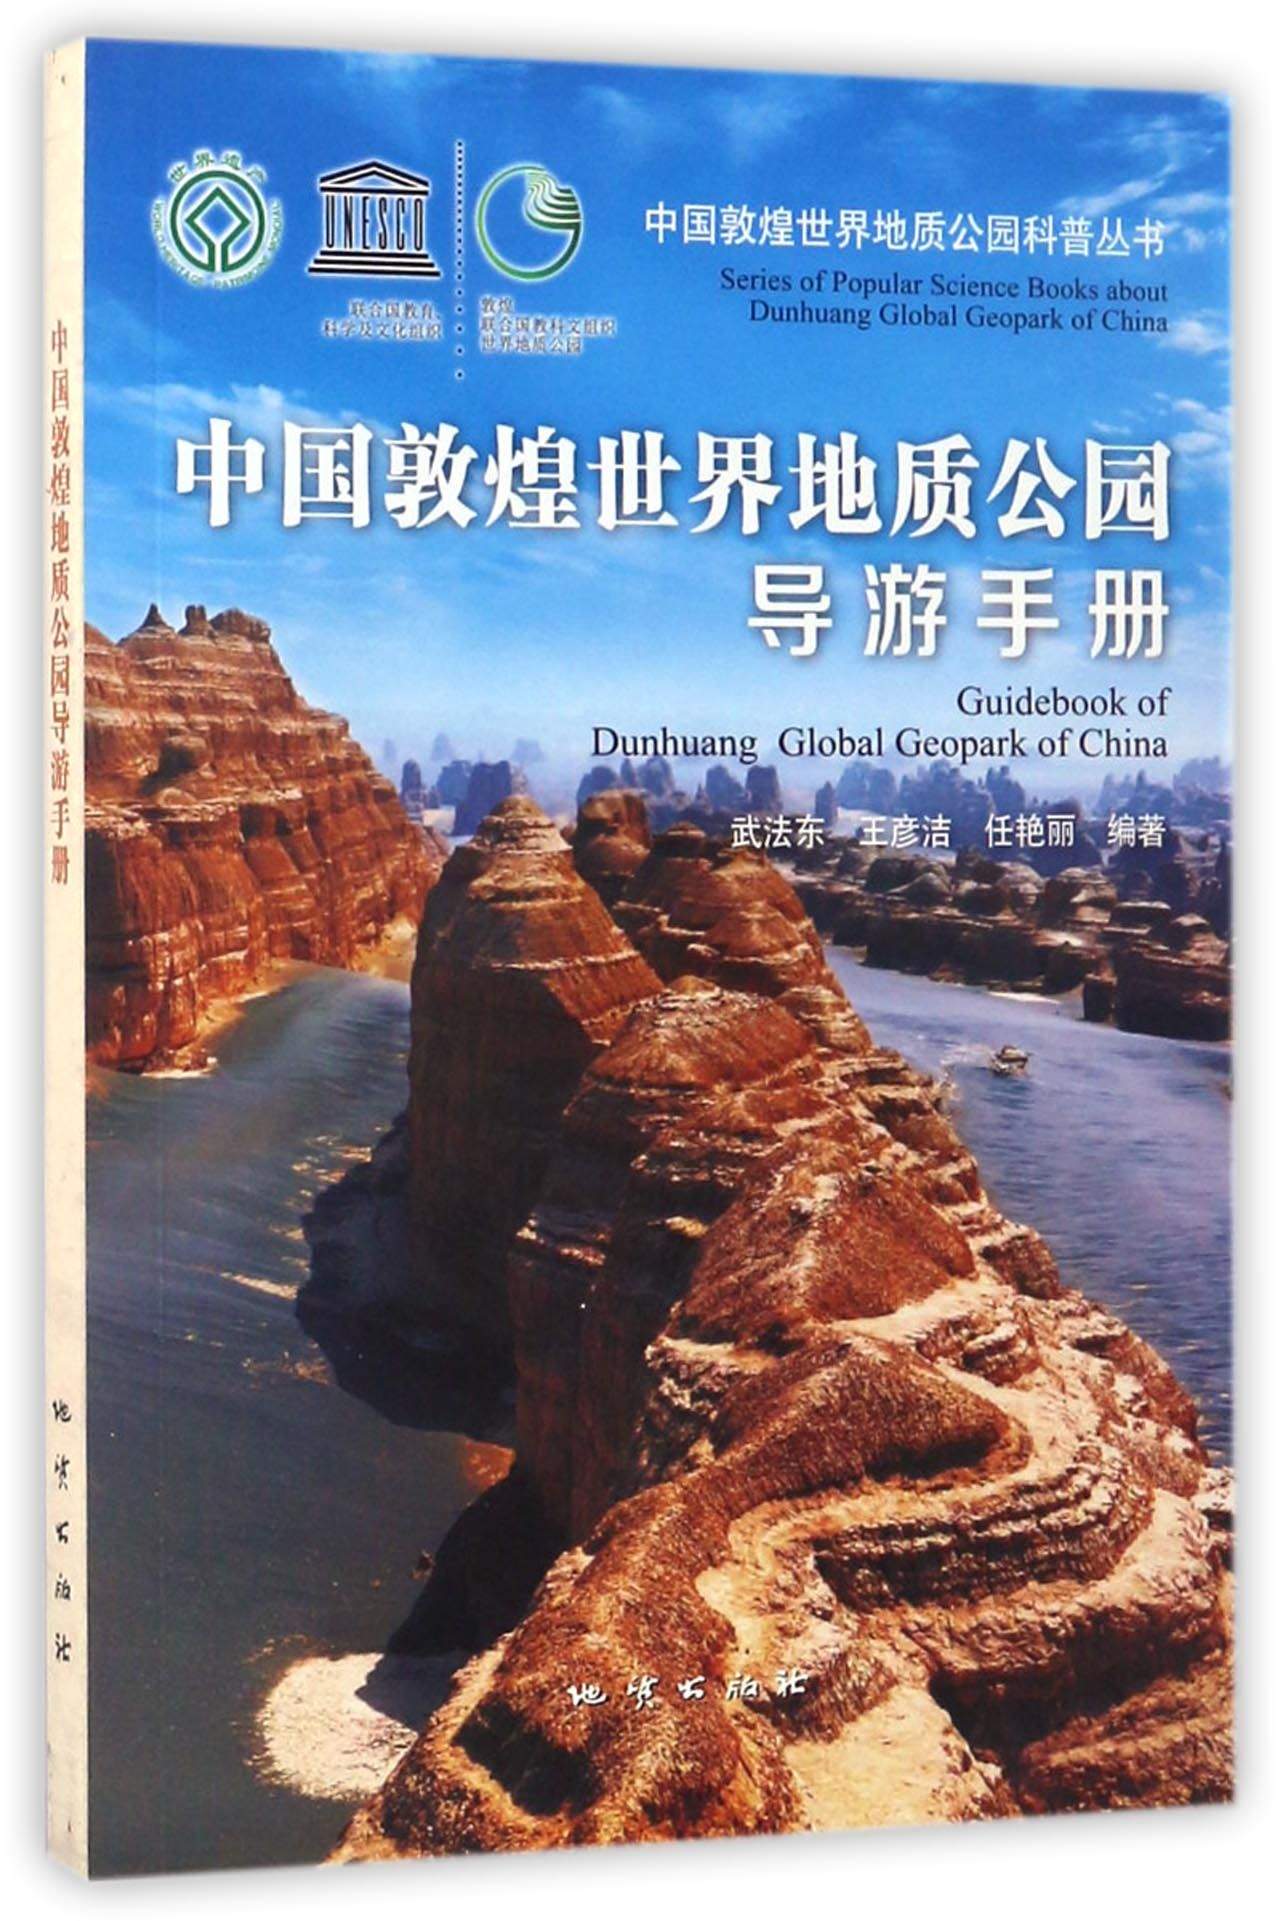 中国敦煌世界地质公园导游手册/中国敦煌世界地质公园科普丛书 mobi格式下载